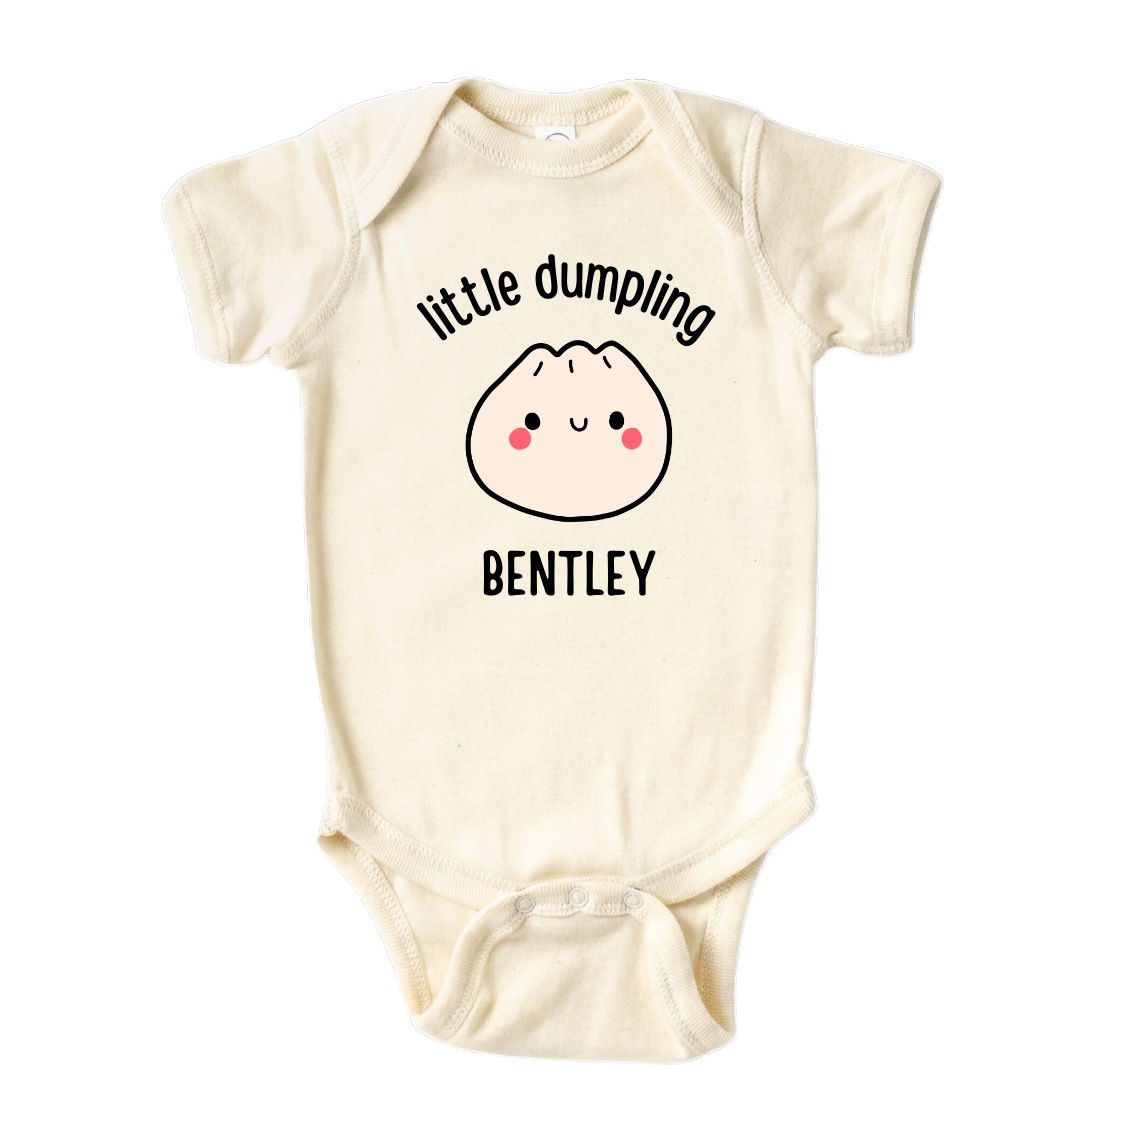 Cute Baby Onesie - Baby Clothes - Newborn Gift - Custom Baby Gift for Newborn